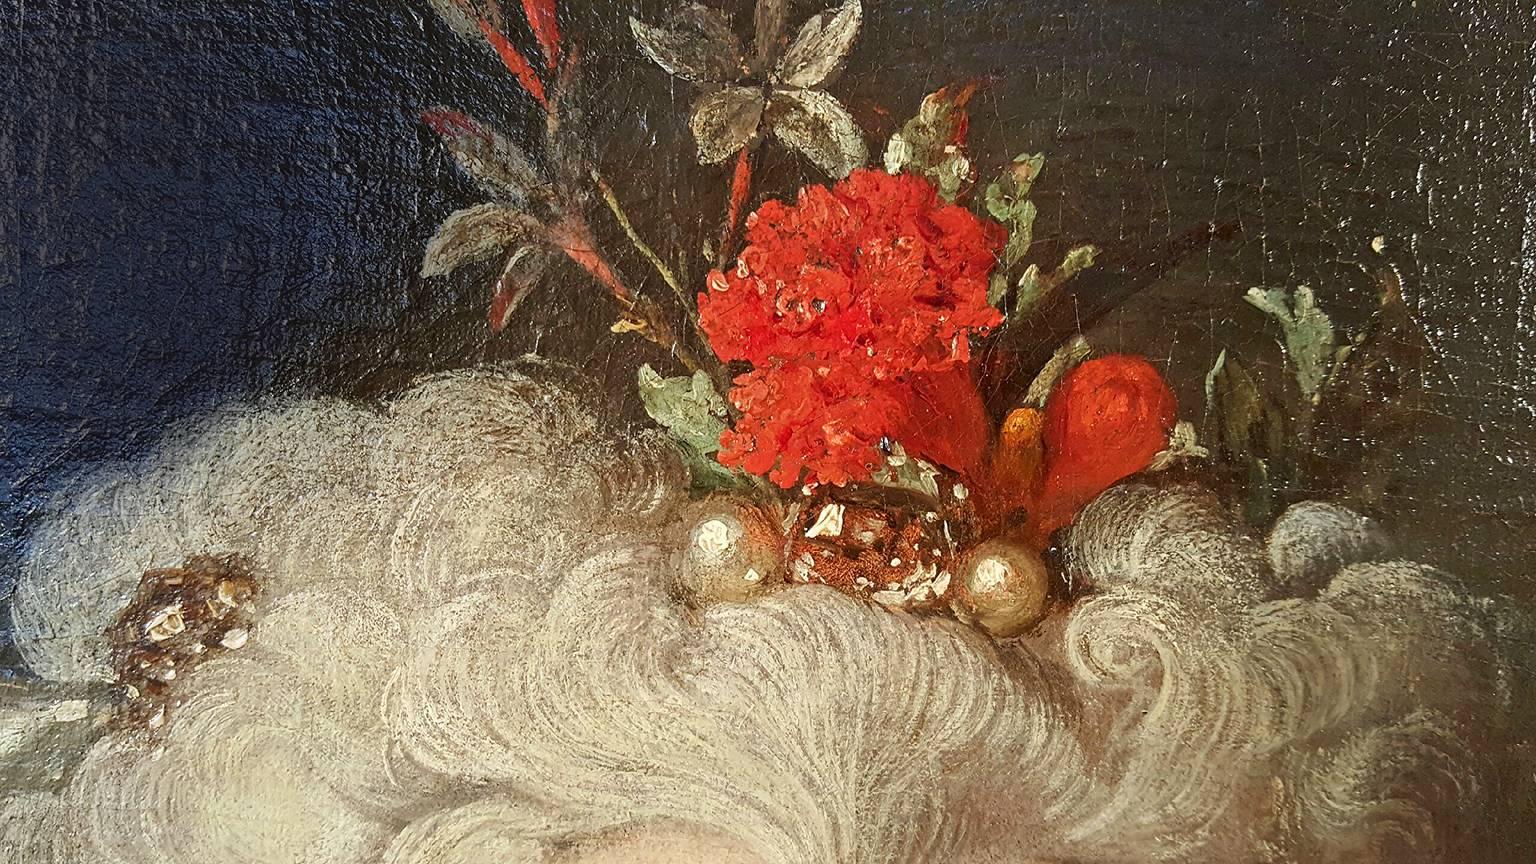  Nicolas de Largillierre  malte Elisabeth Marguerite in Öl auf Leinwand.   Eine größere Version dieses Werks wurde von Sotheby's für 500.000 $ angeboten und befindet sich heute in einem französischen Museum - Palais des Beaux-Arts de Lille.  